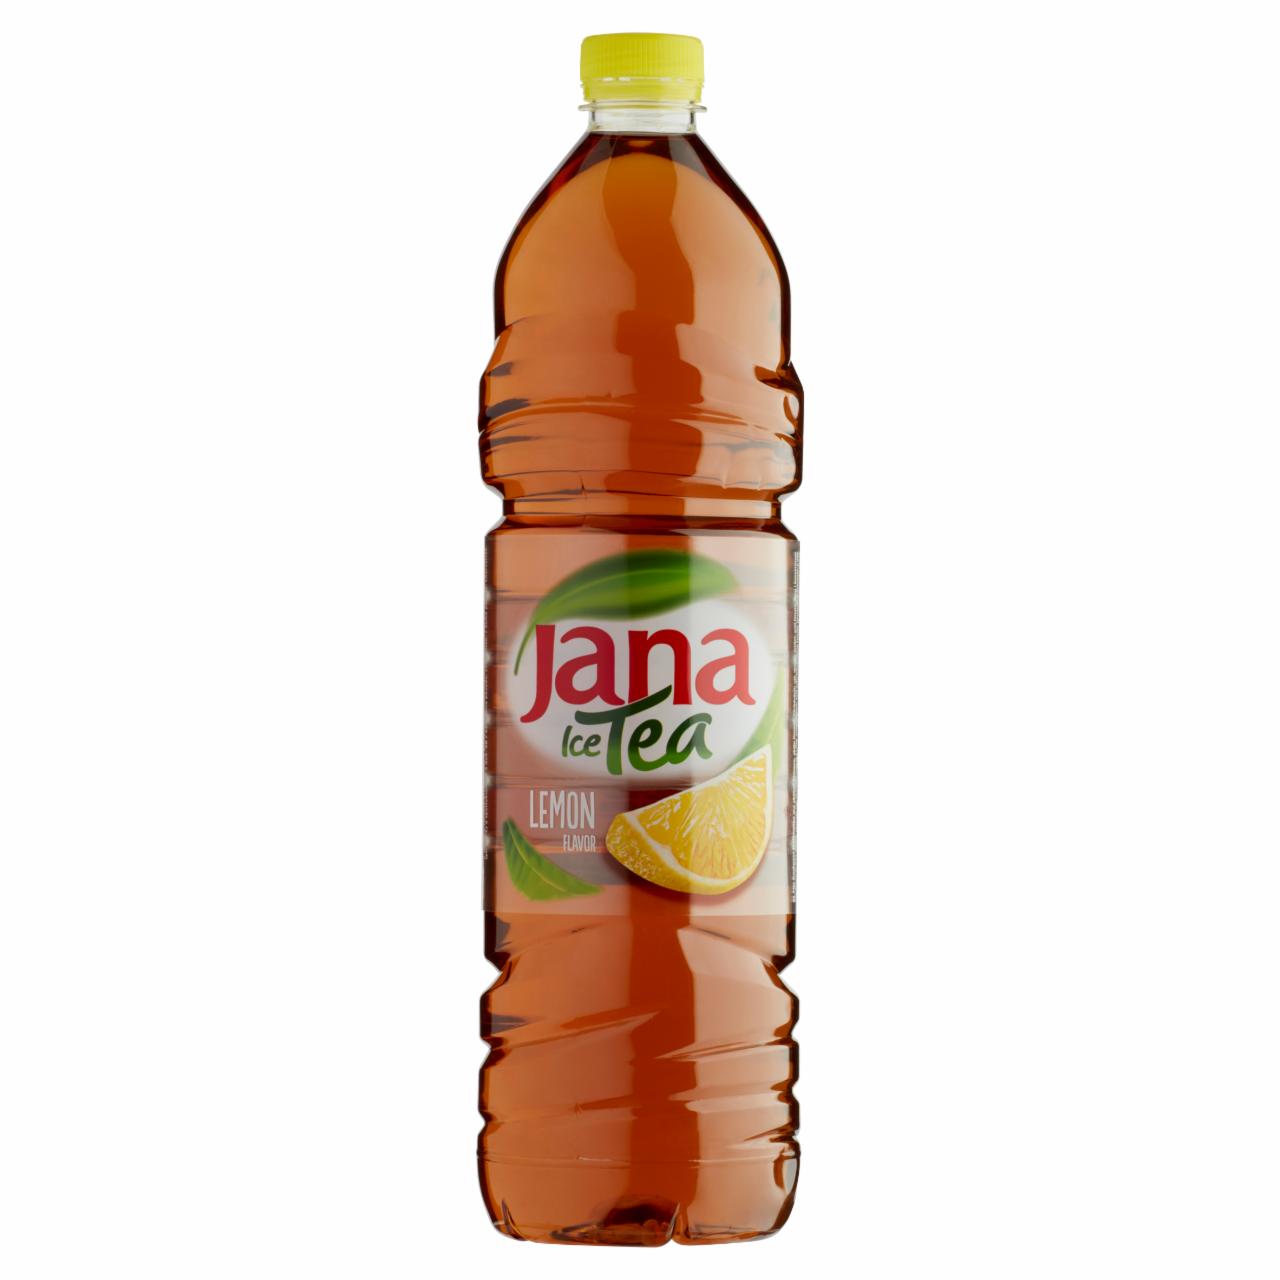 Képek - Jana Ice Tea szénsavmentes citrom ízű üdítőital 1,5 l